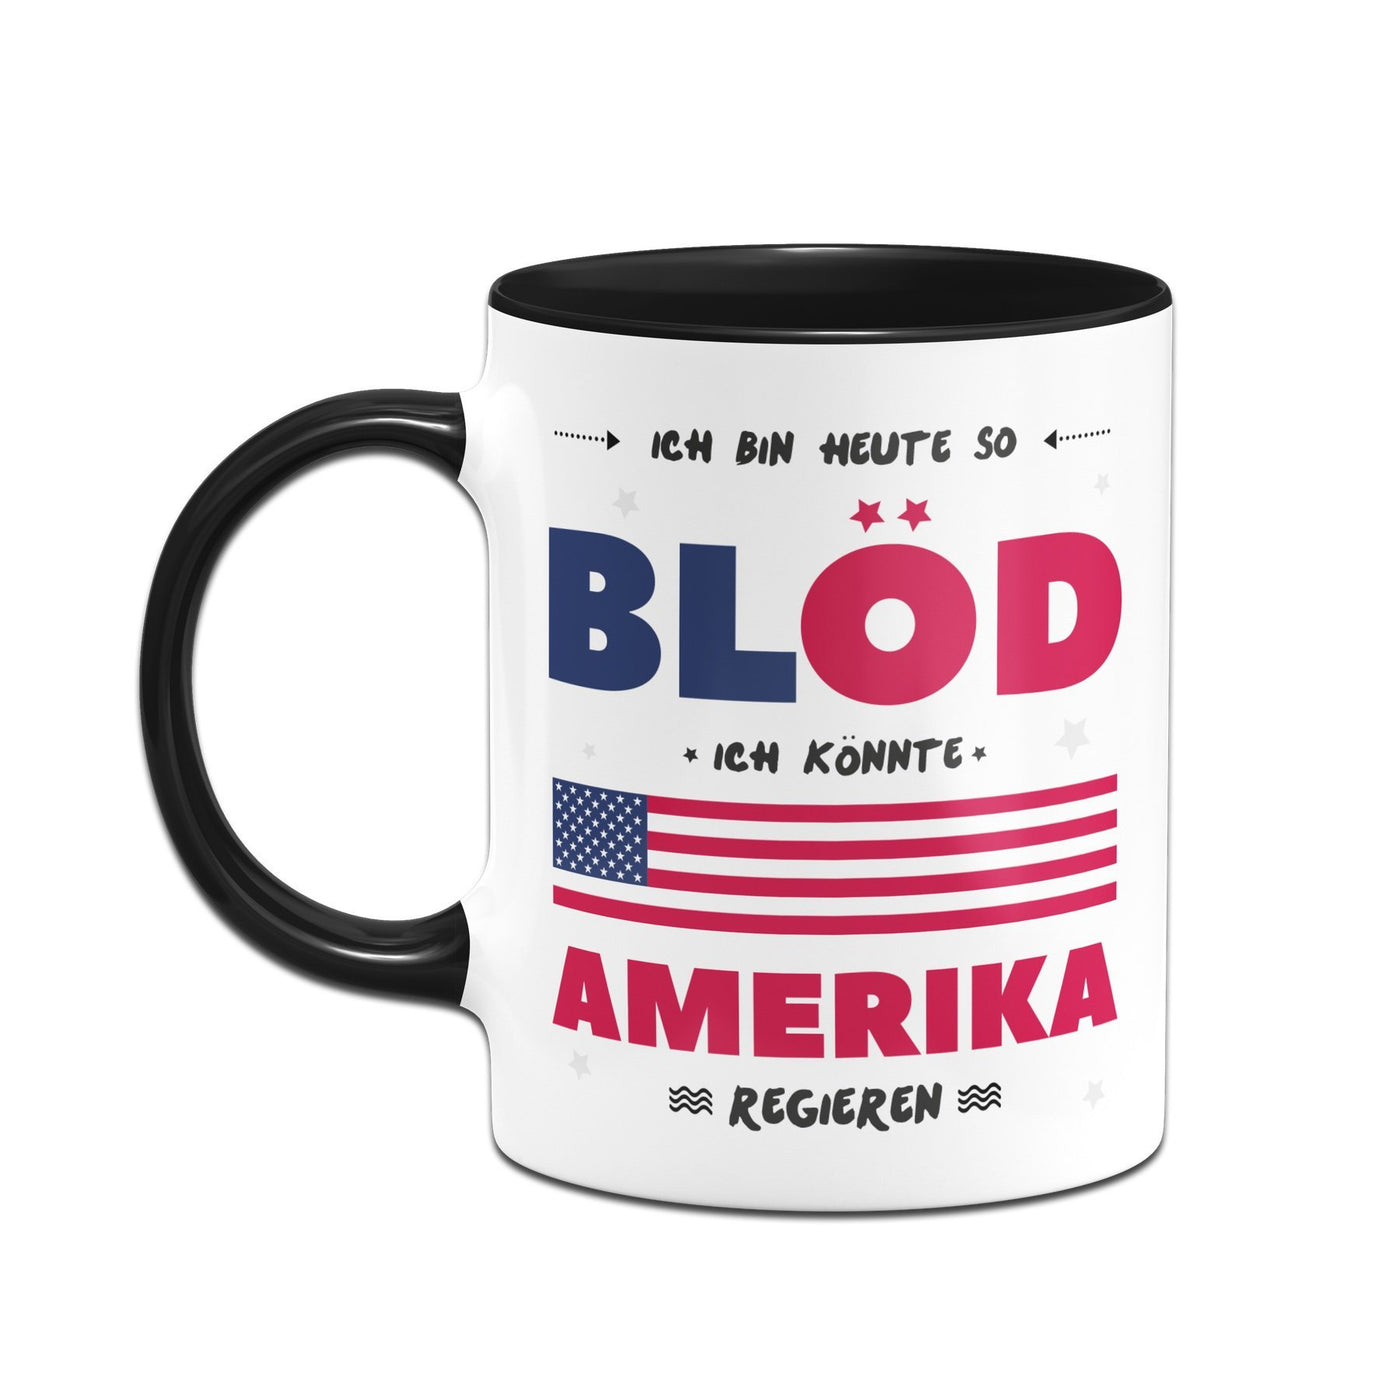 Bild: Tasse - Ich Bin heute so blöd ich könnte Amerika regieren Geschenkidee